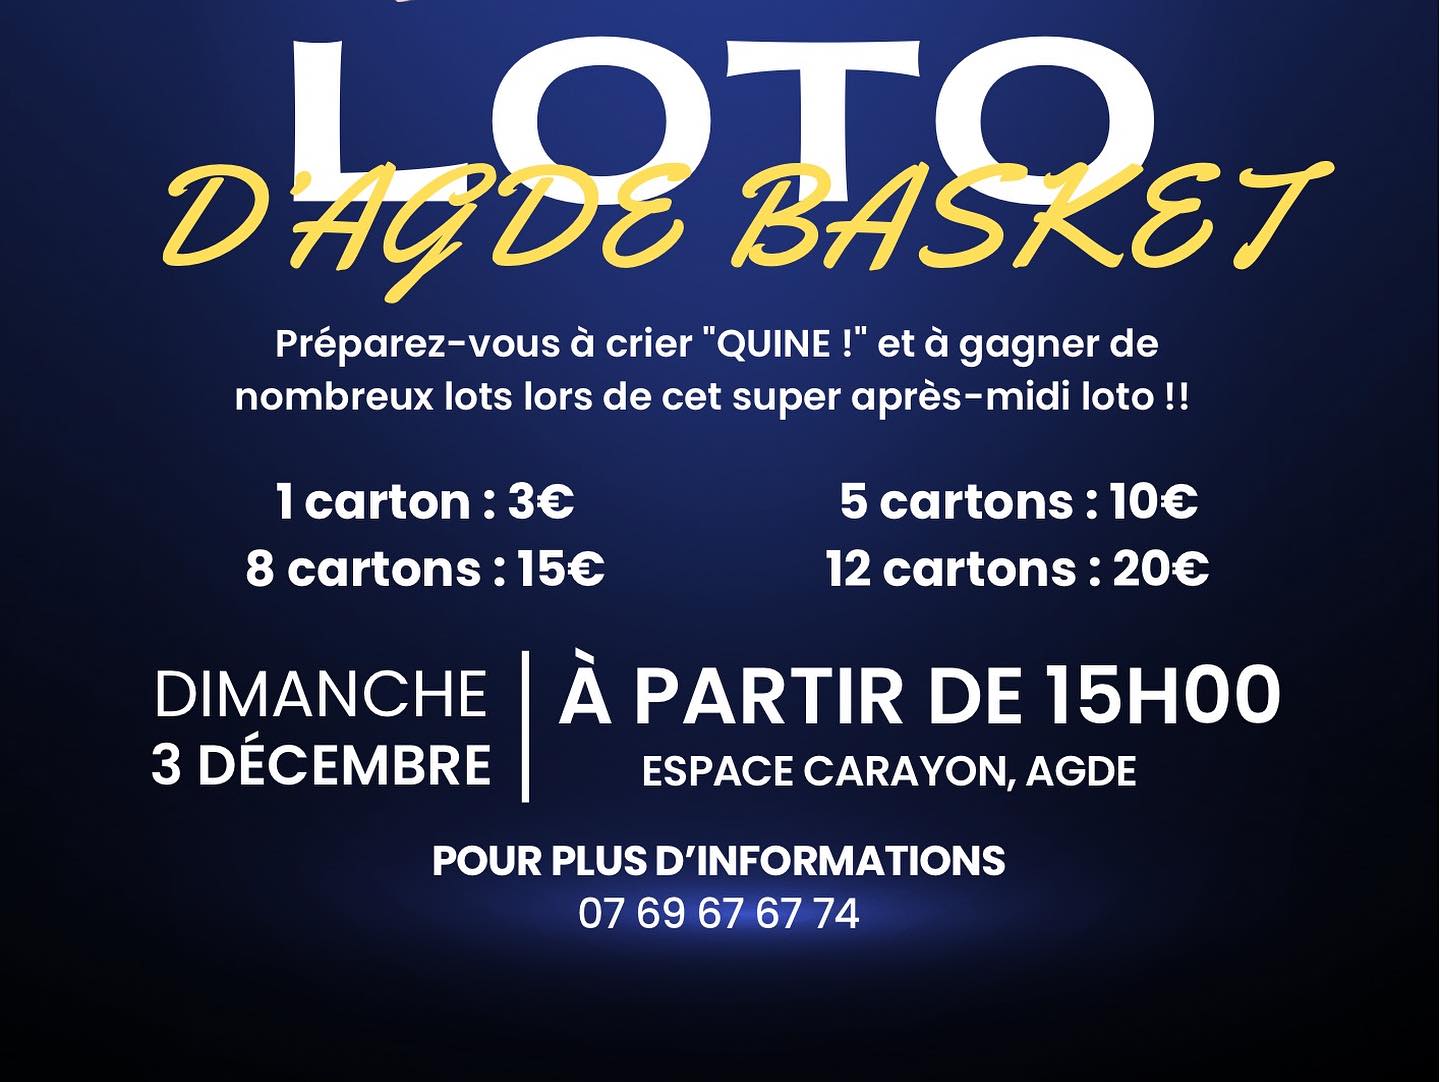 Agde - Le Agde Basket organise son loto ce dimanche 3 décembre à l'Espace Carayon